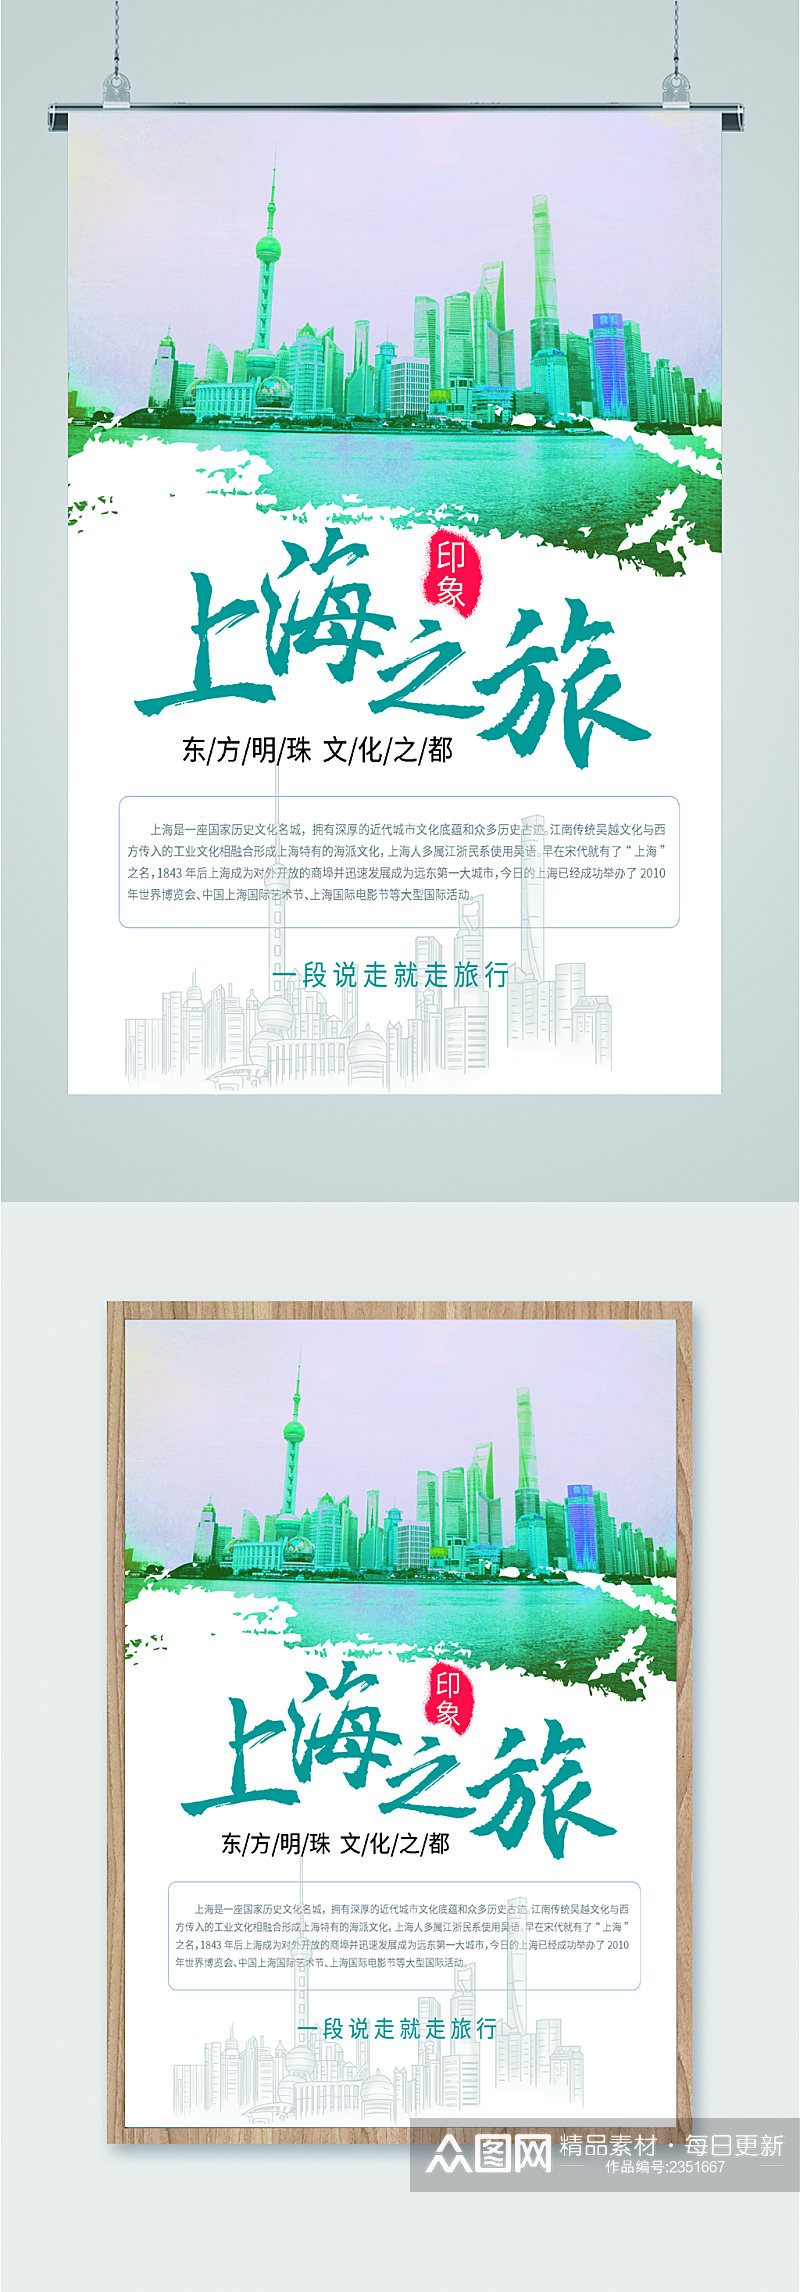 上海之旅东方明珠海报素材